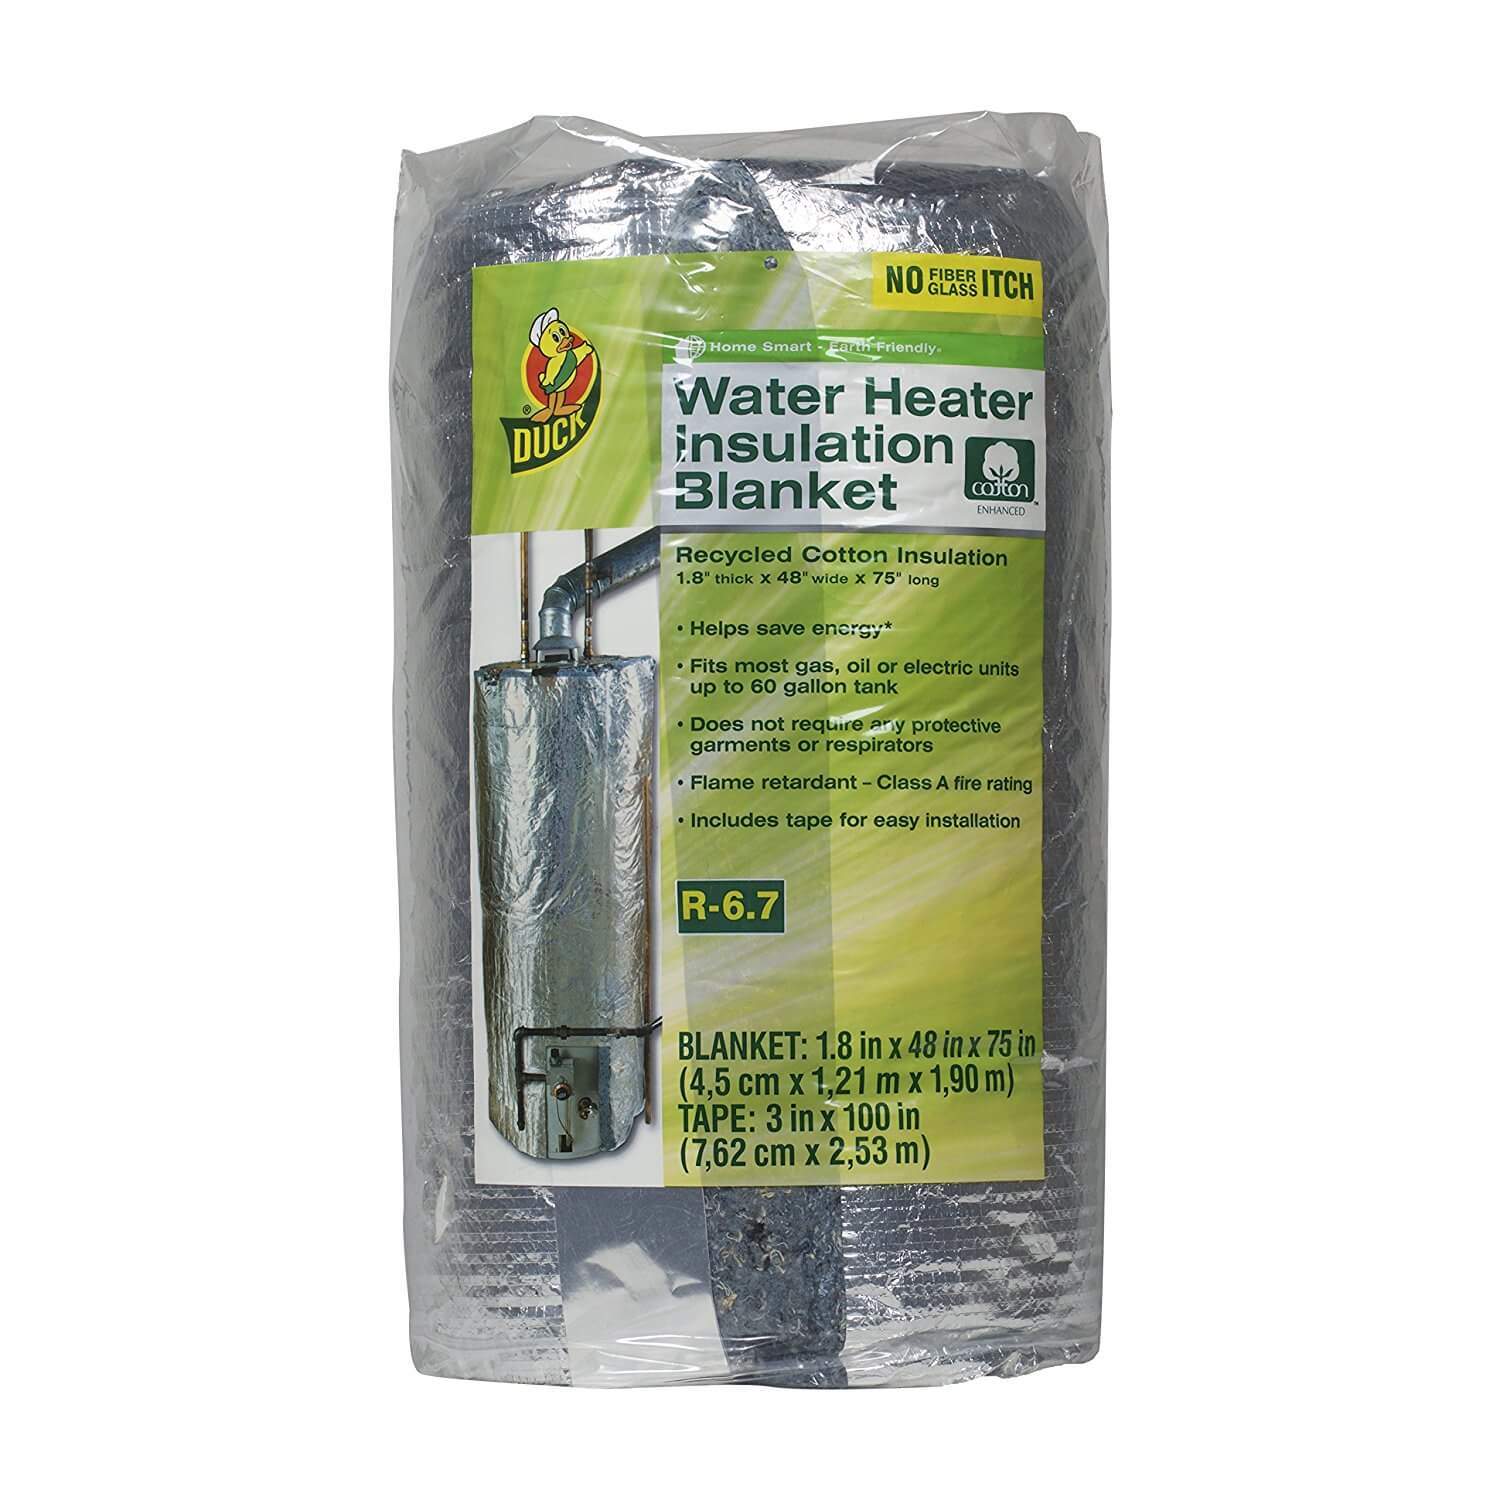 Duck Brand 280464 Water Heater Insulation Blanket